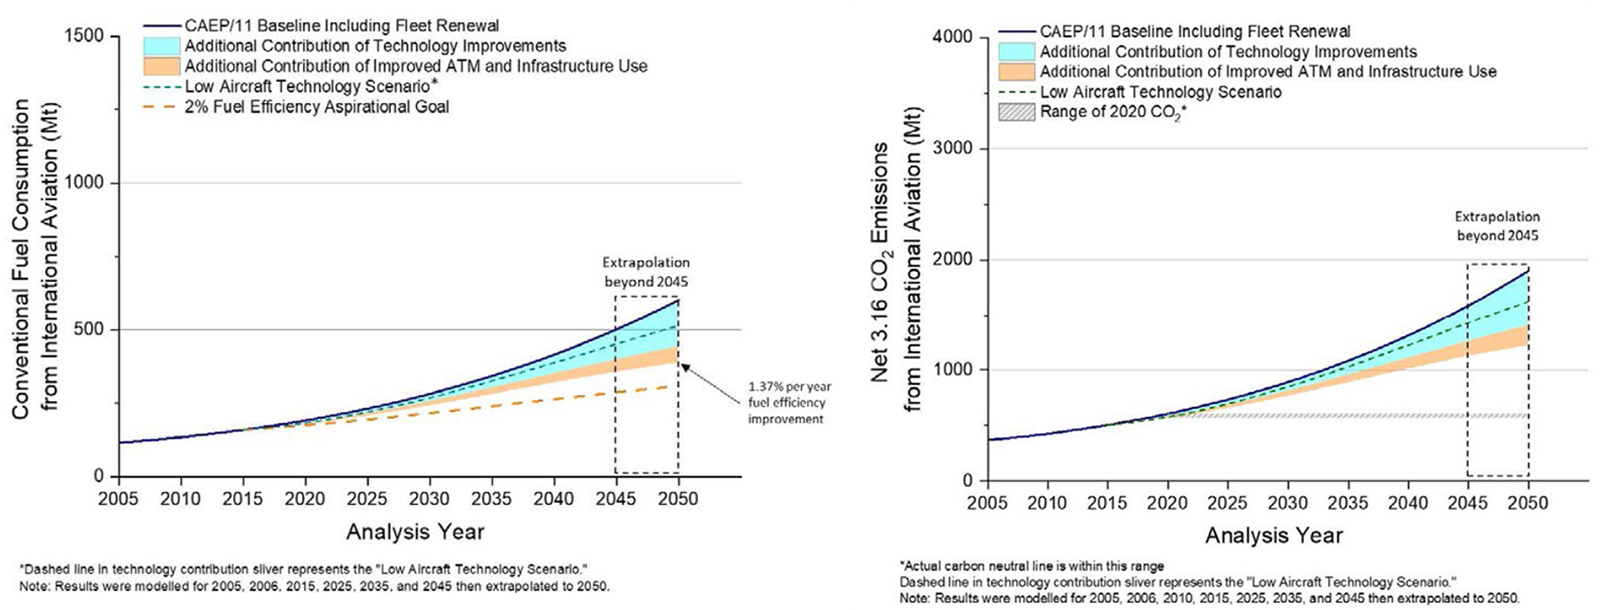 entwicklung kerosinverbrauch thg co2 emissionen internationale luftfahrt 2005 2050